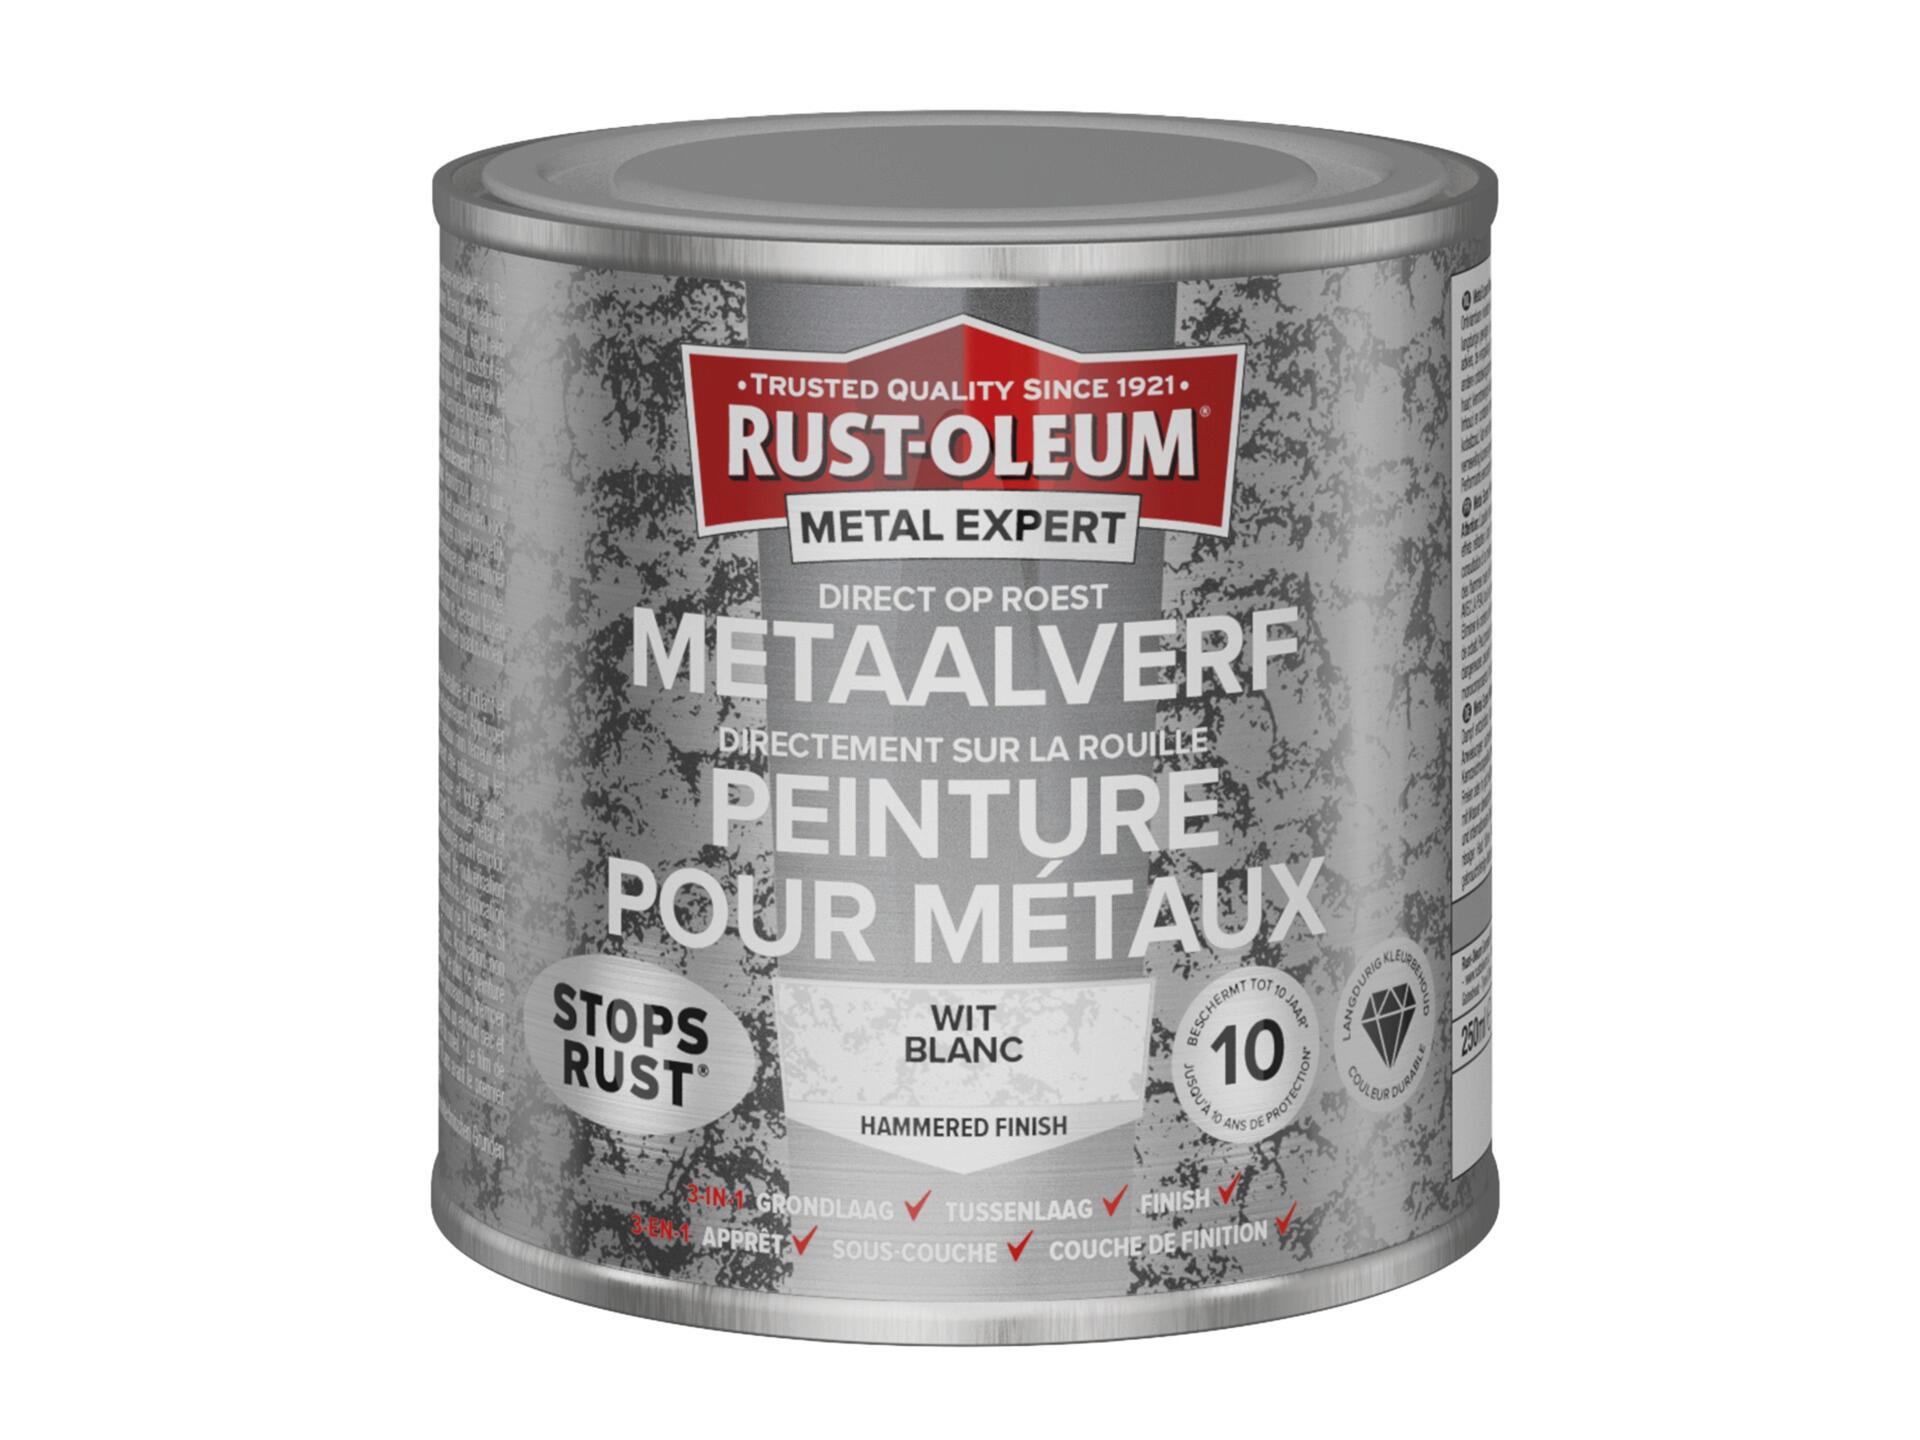 Rust-oleum Metal Expert peinture pour métaux martelé 250ml blanc